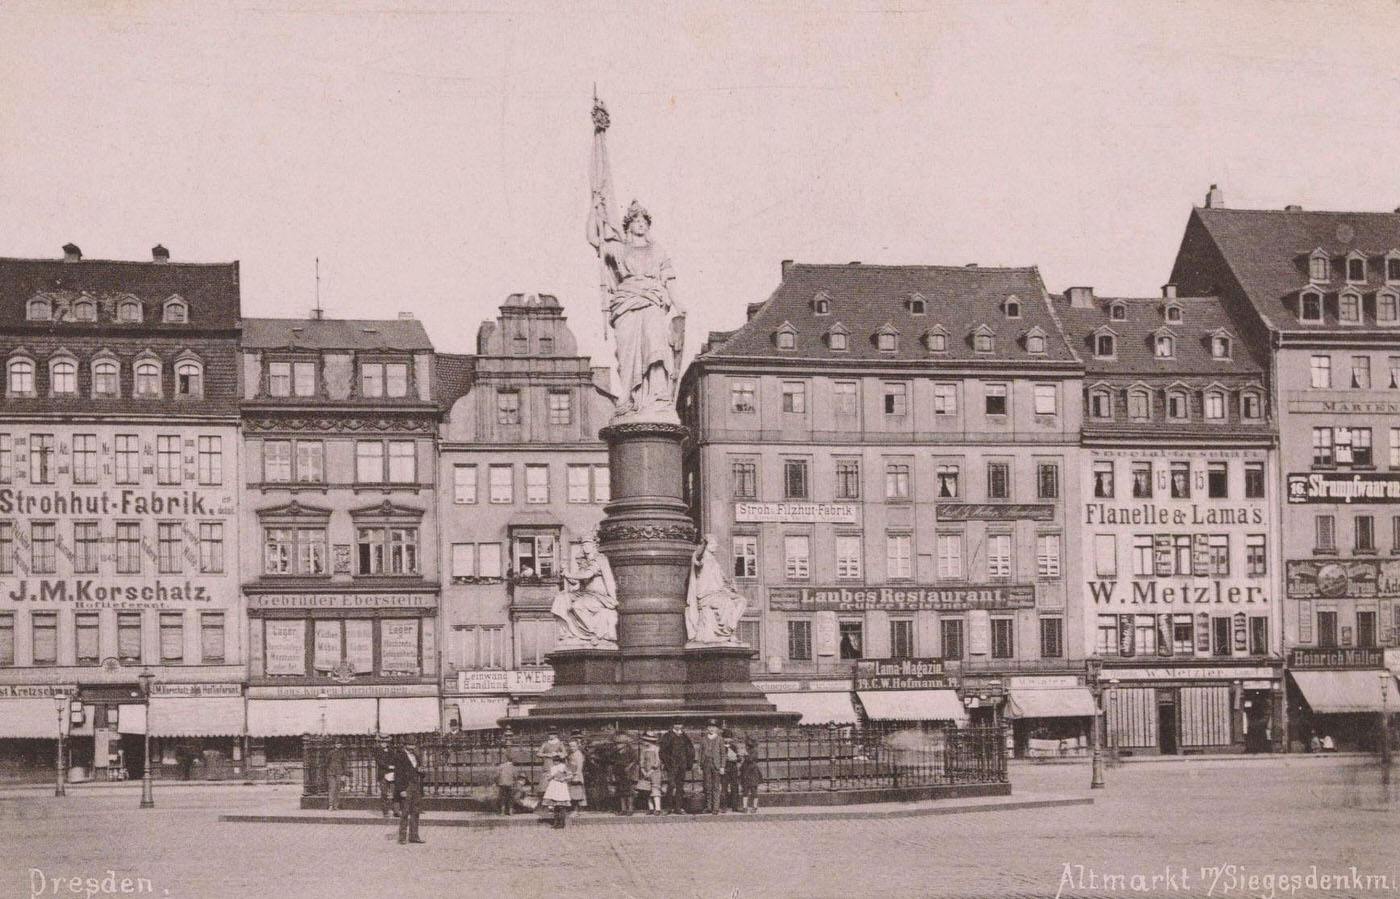 View of the Altmarkt in Dresden, Altmarkt m/Siegesdenkml, Stengel & Markert, 1888.